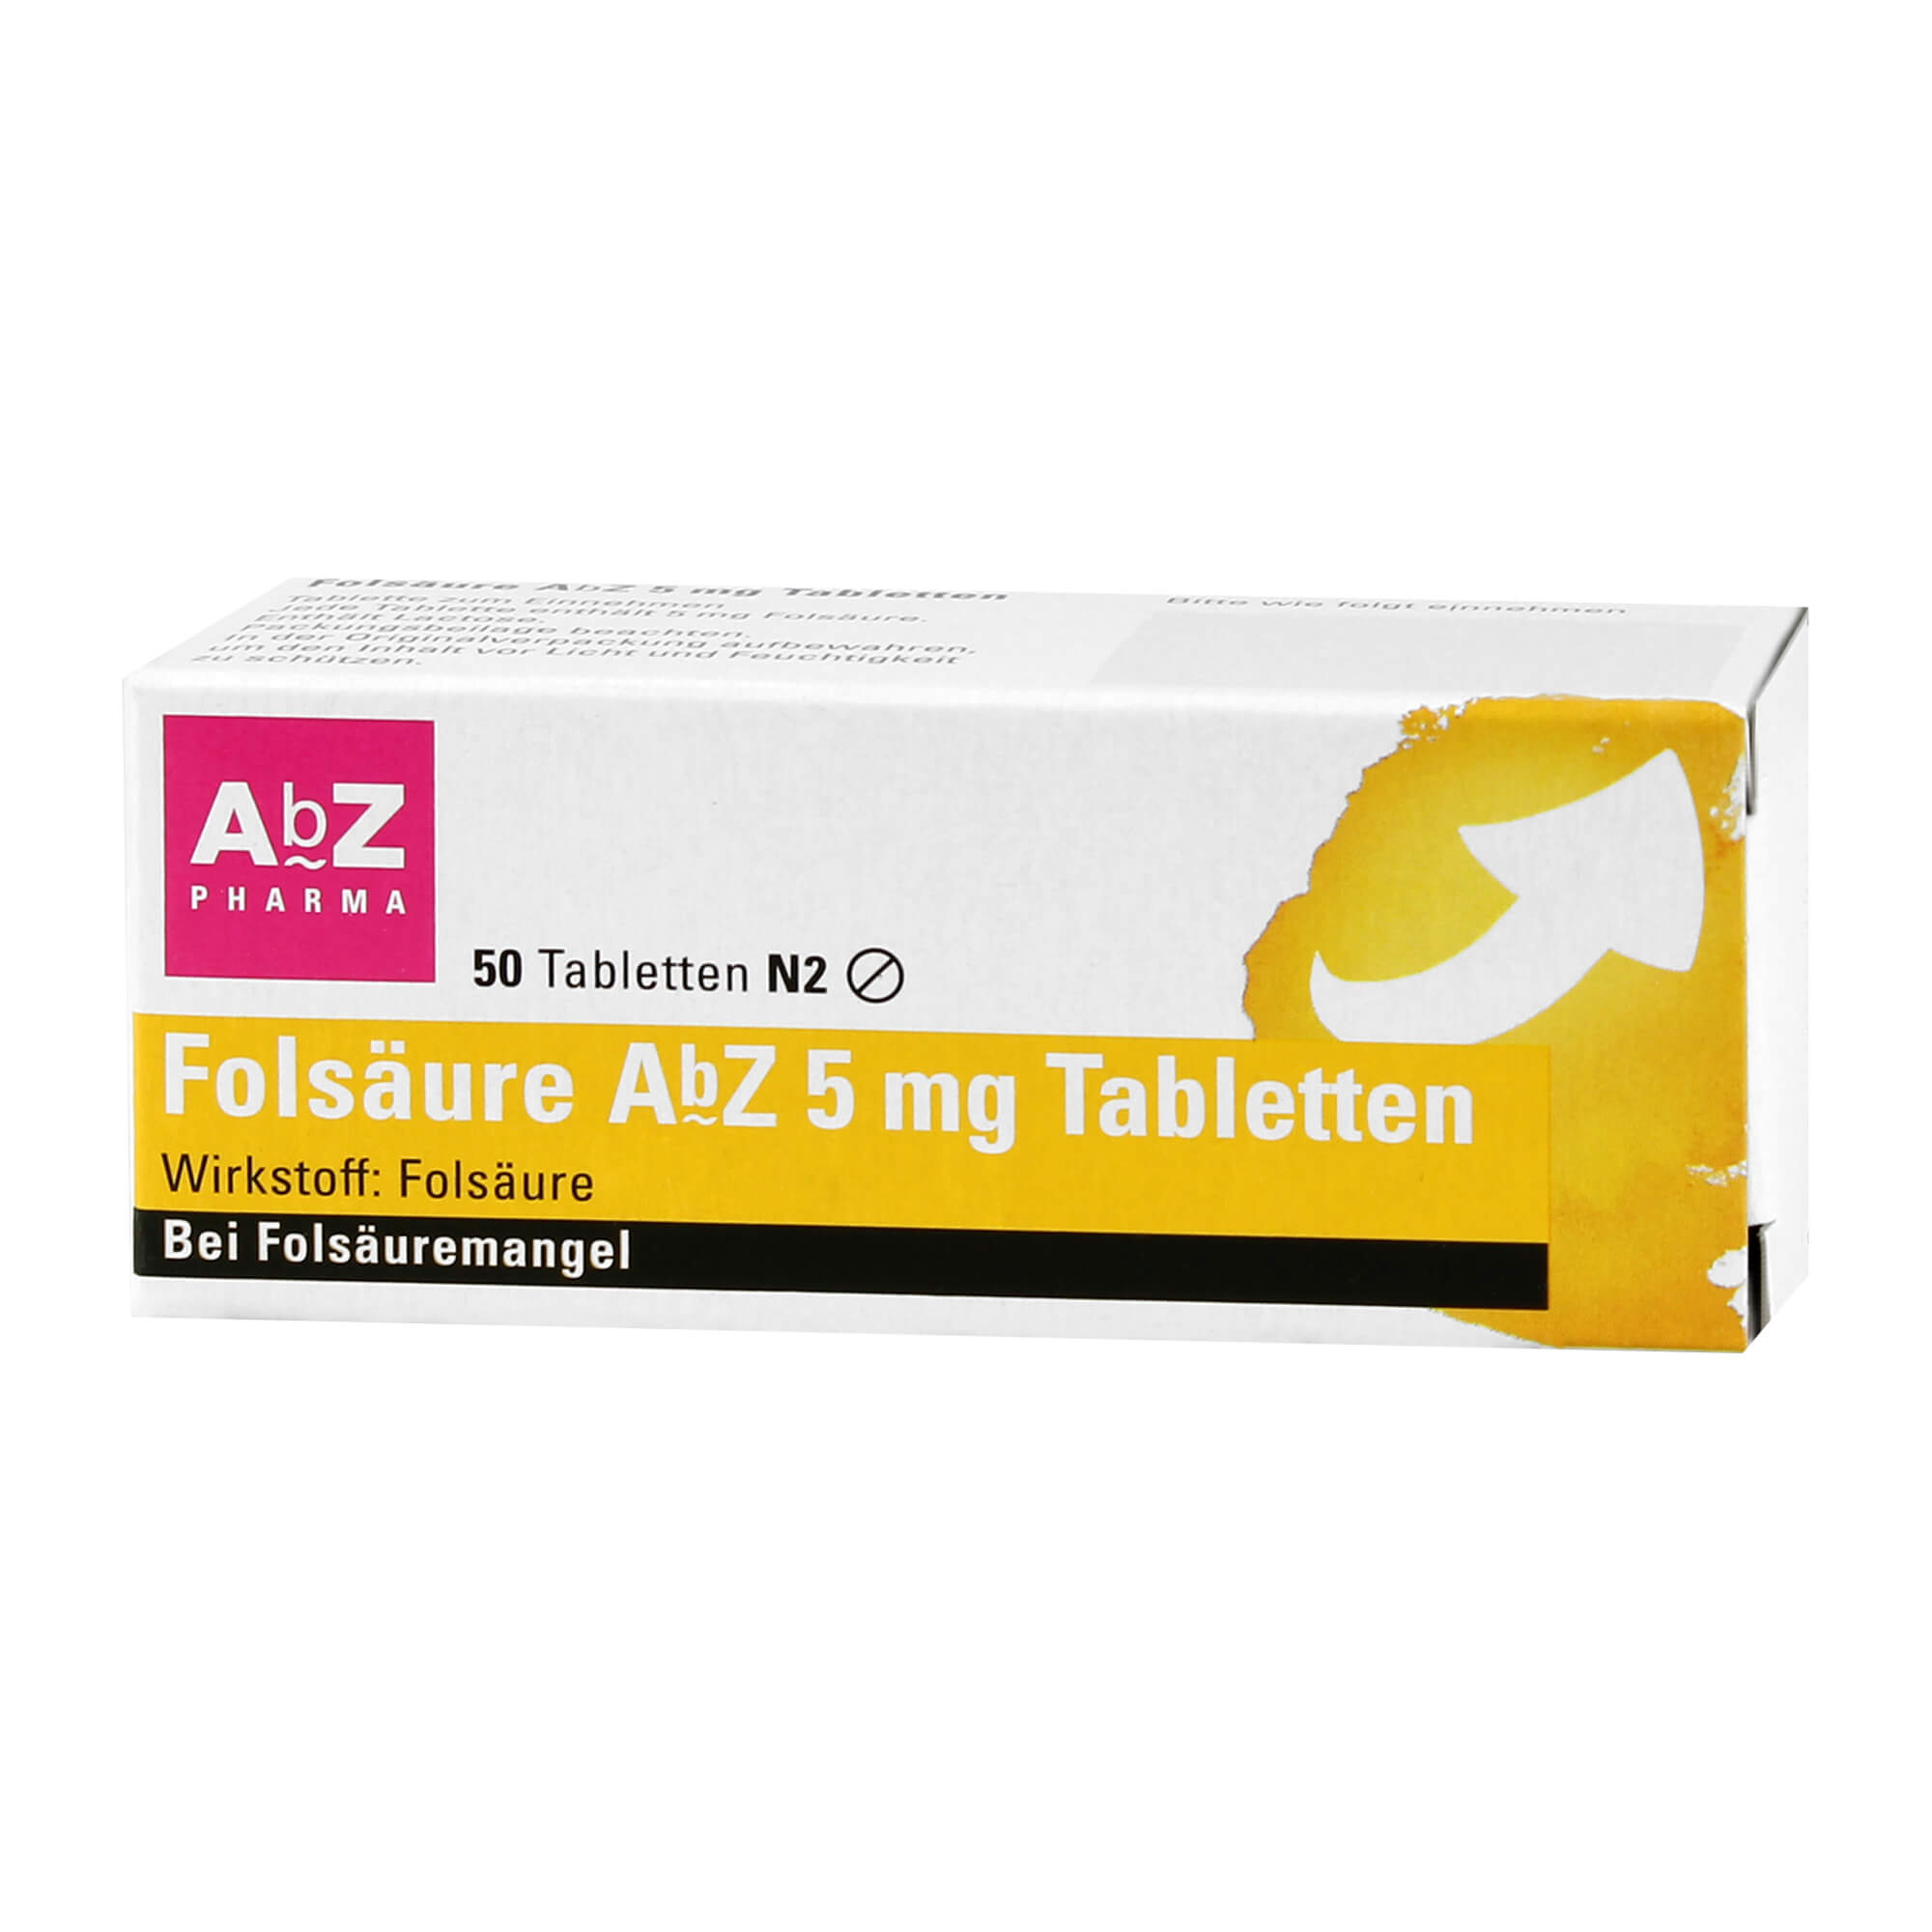 Folsäure ABZ 5 mg